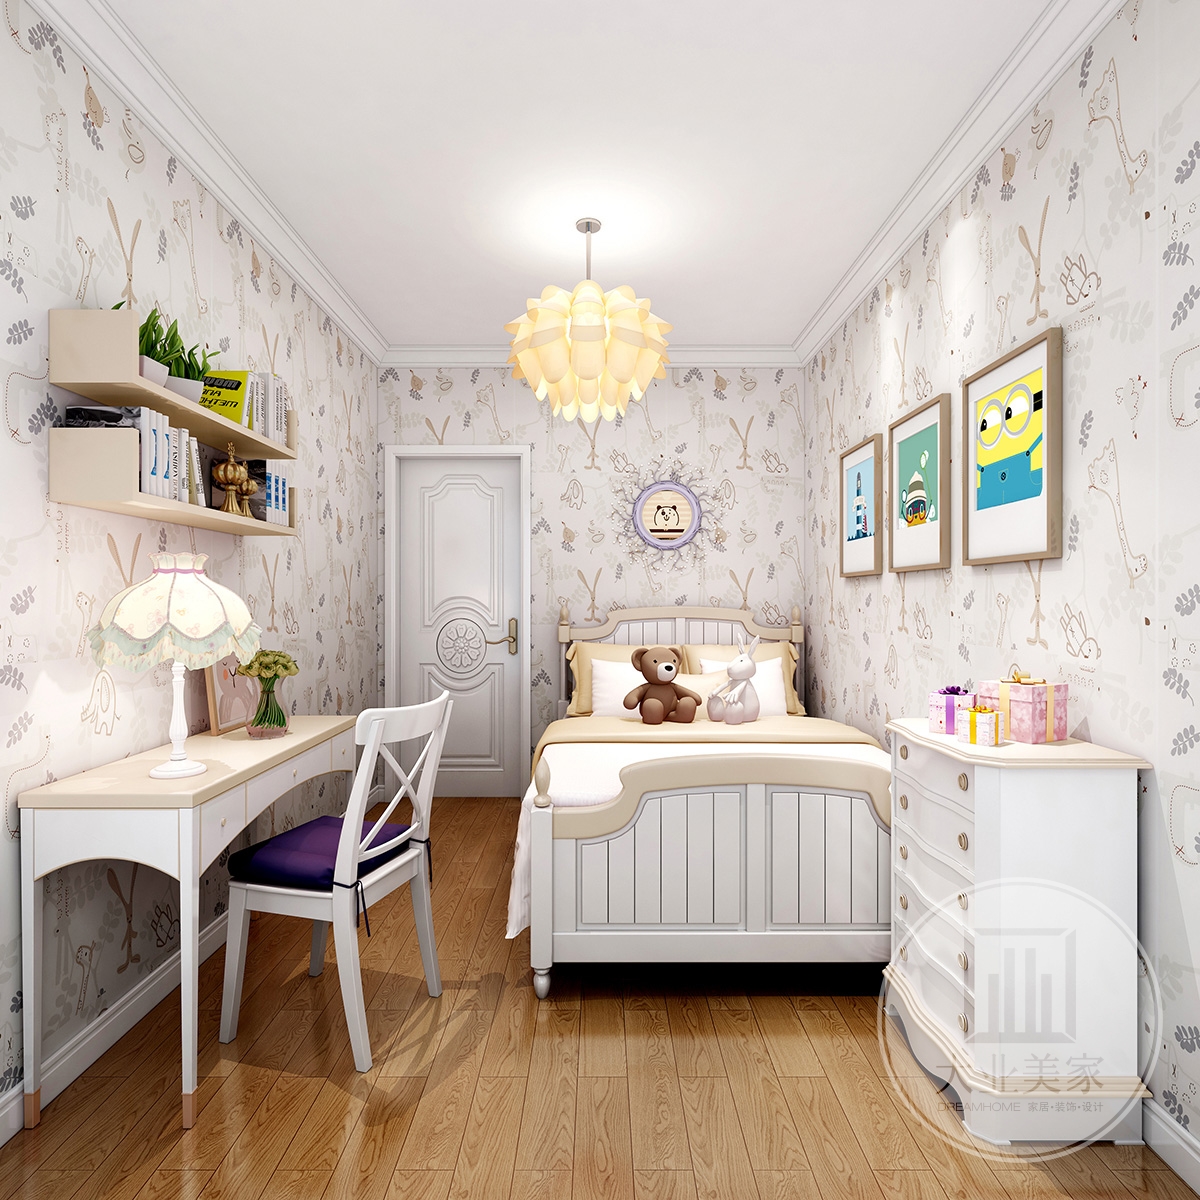 女孩房效果图：女孩房整体简洁优雅的空间，搭配上米黄色床单与桌子，也让空间显得更加雅致温馨。